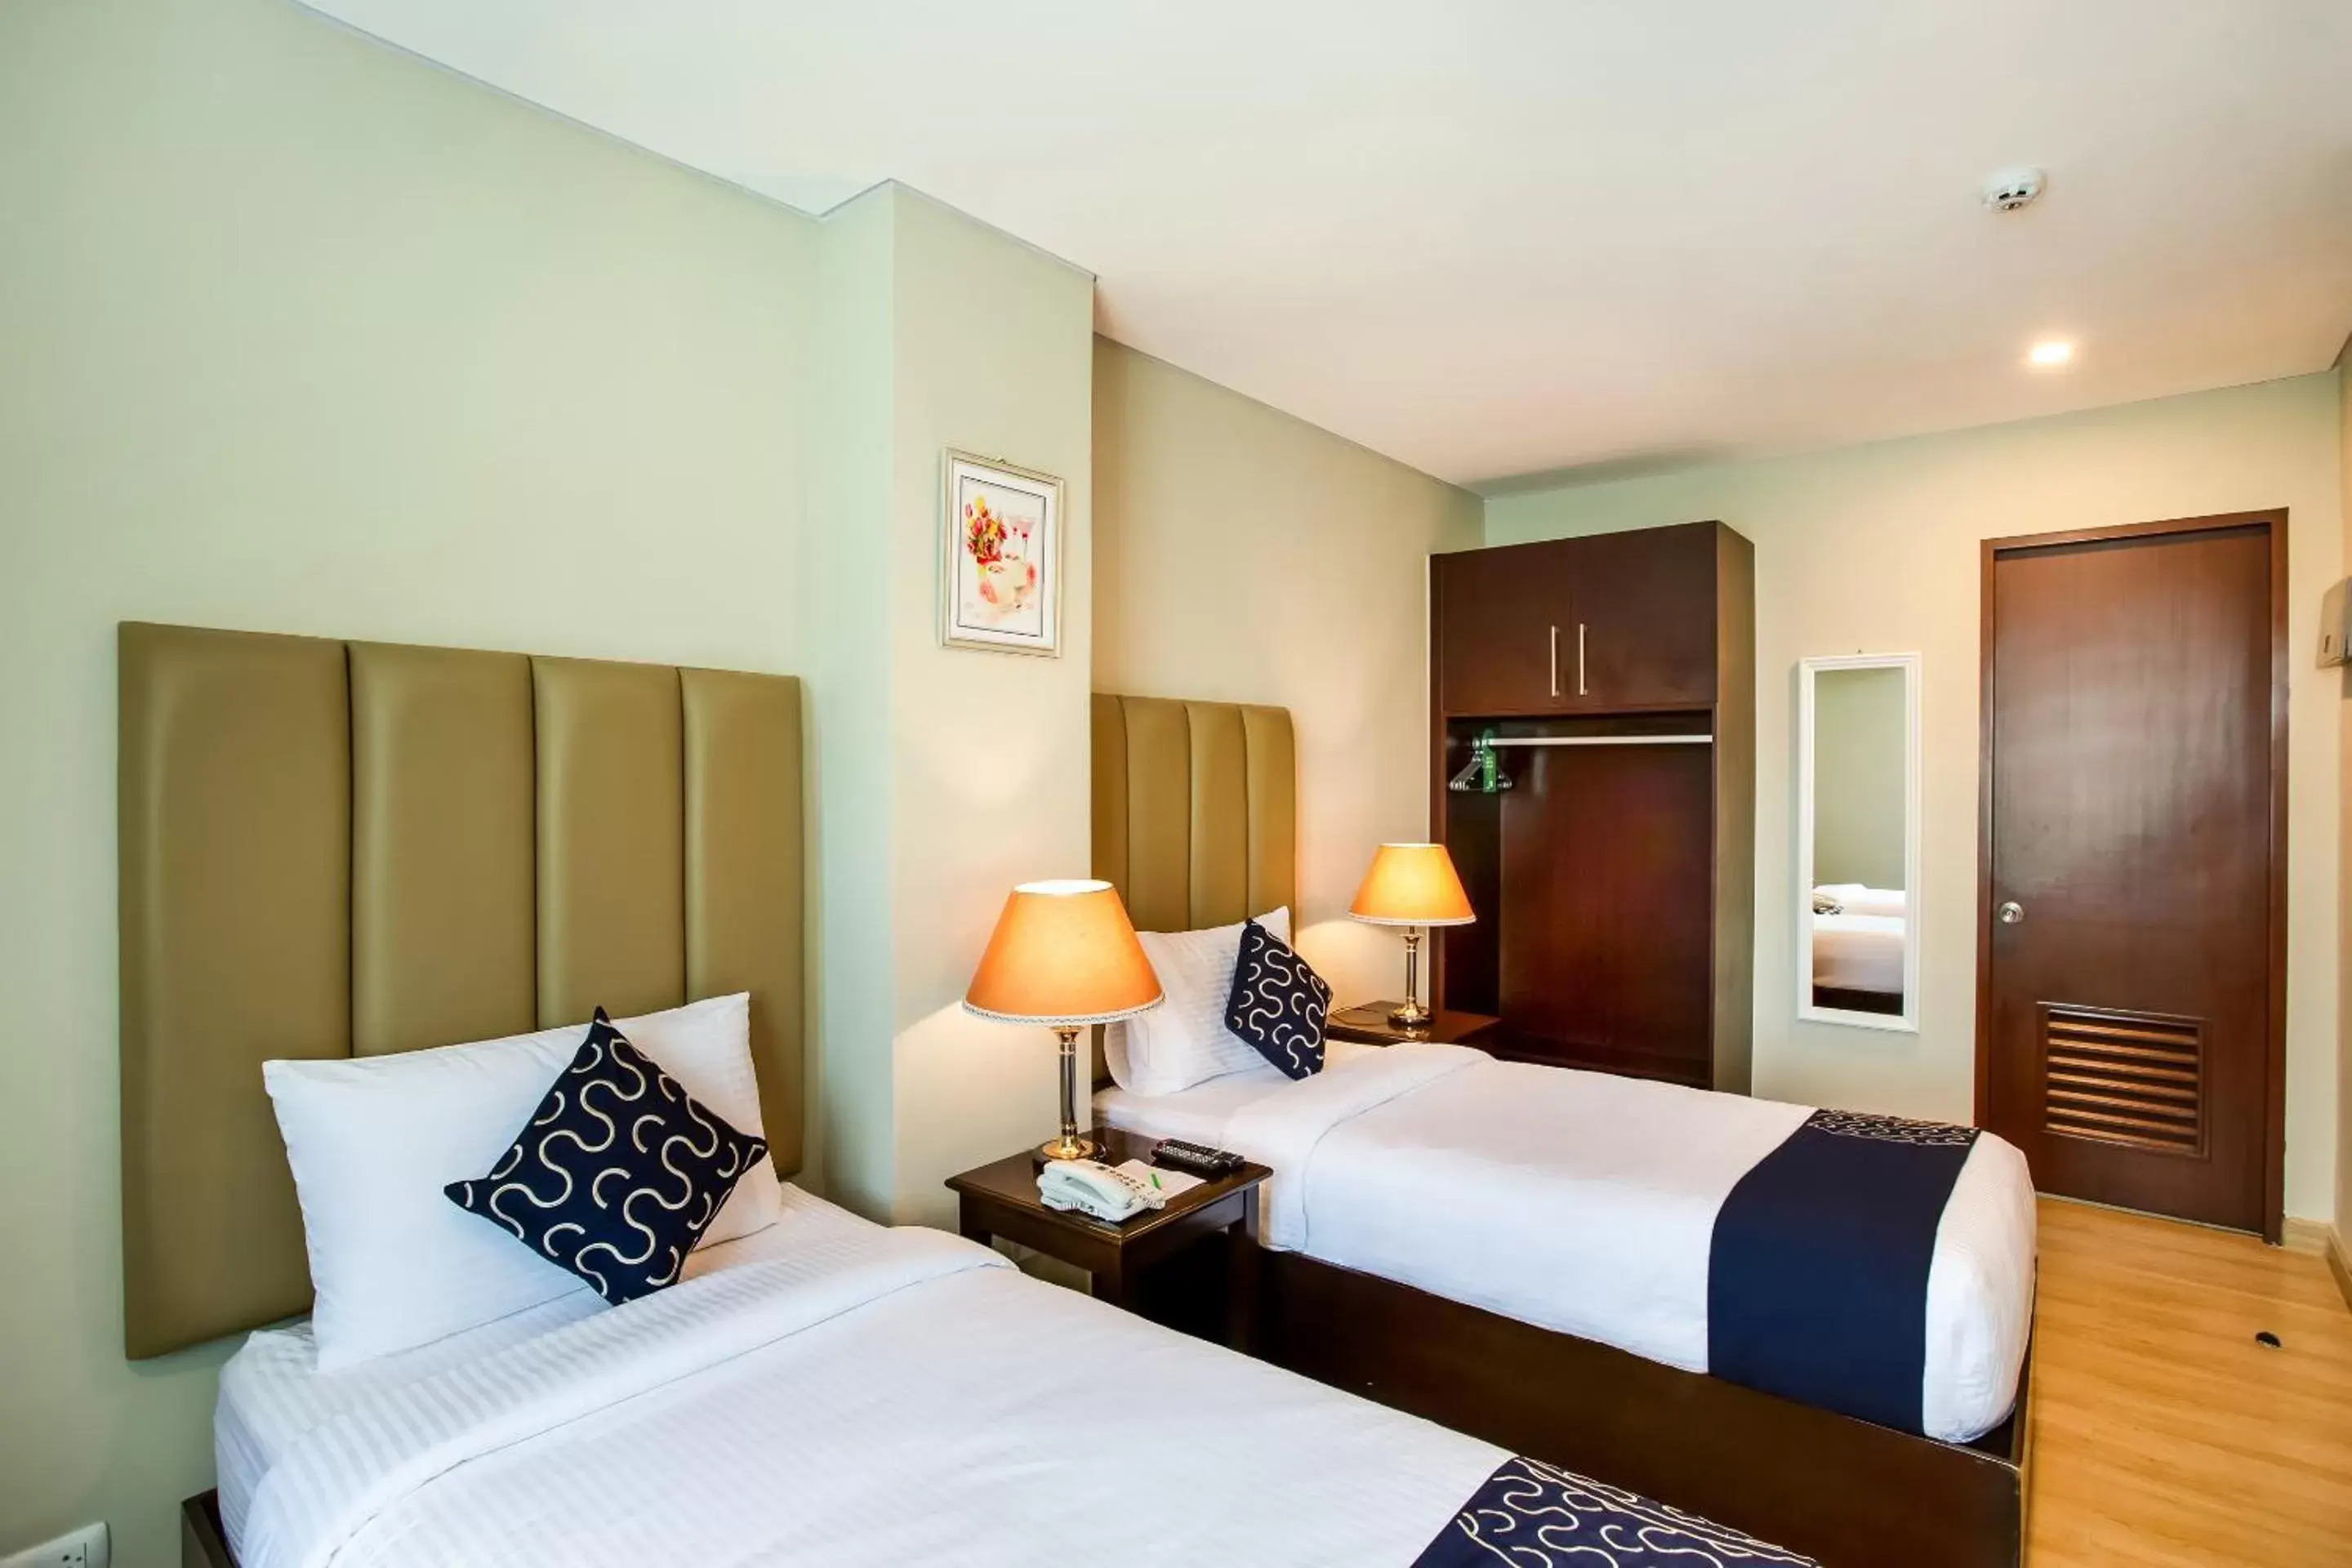 Bedroom, Bed in Capital O 461 Asrodel Hotel